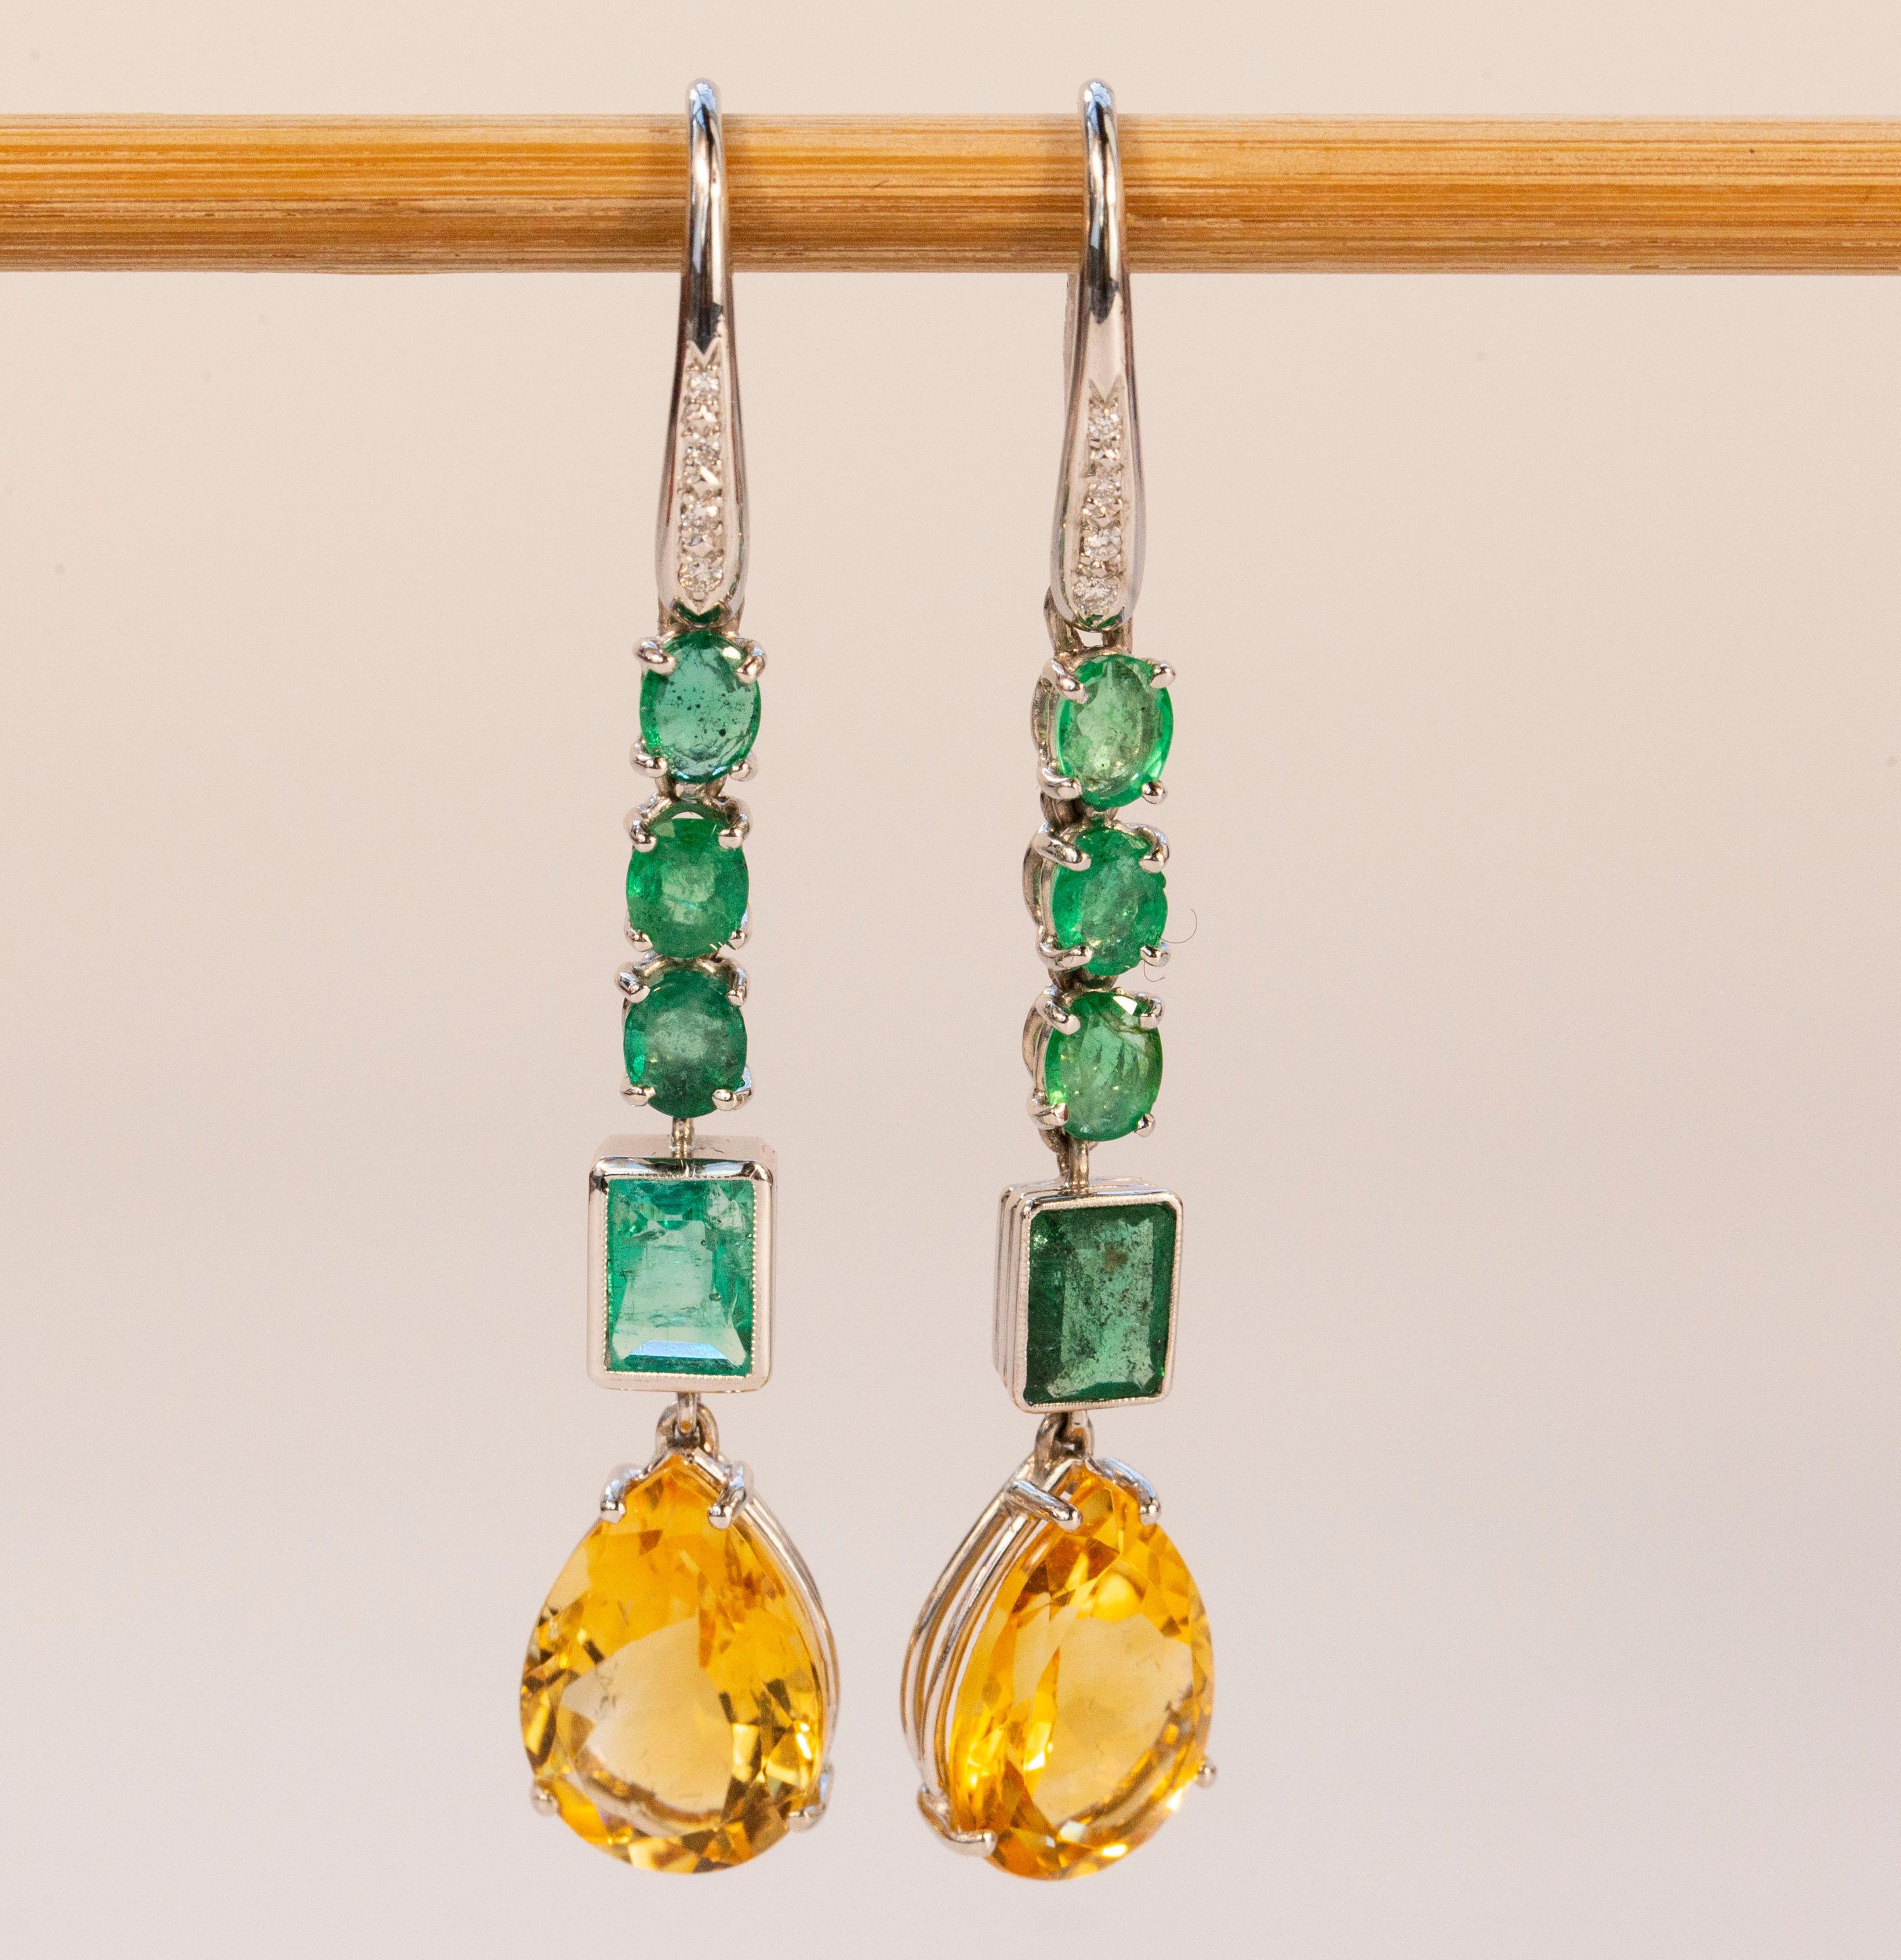 Ein Set bestehend aus zwei Ohrringen aus 18 Karat Weißgold, besetzt mit vier Smaragden, Citrin und Diamanten. In jedem Ohrring sind drei der vier Smaragde im Ovalschliff (ca. 0,4 Karat pro Stein) und der vierte Smaragd im rechteckigen